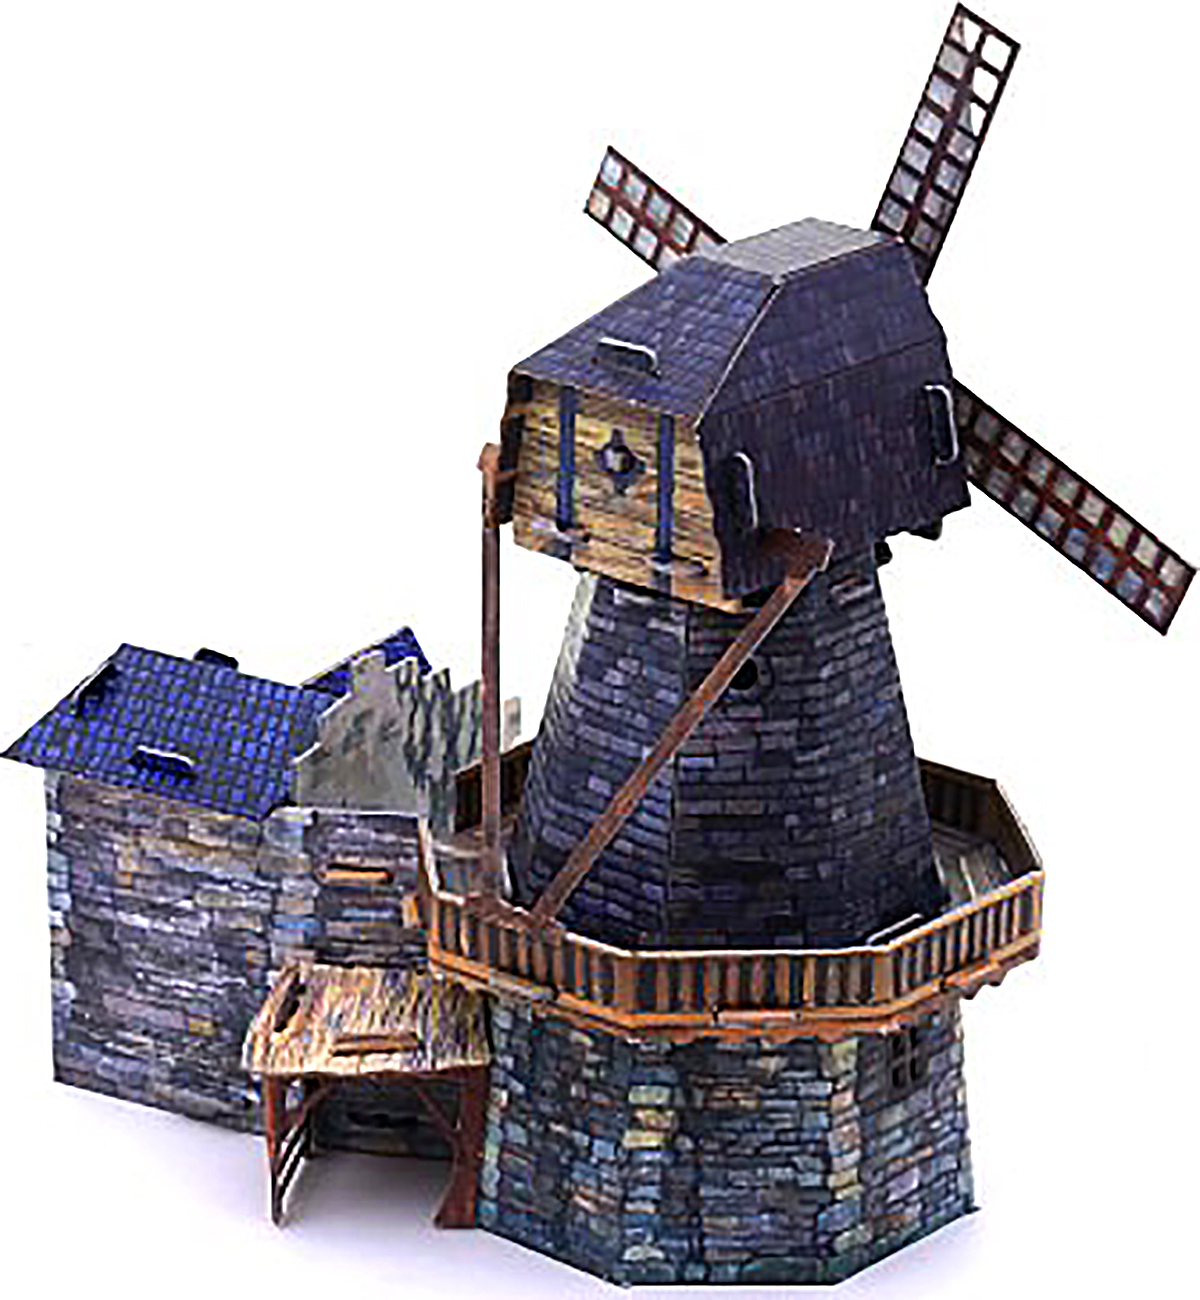 3D Puzzle KARTONMODELLBAU Papier Modell Geschenk Idee Spielzeug Windmühle Neu